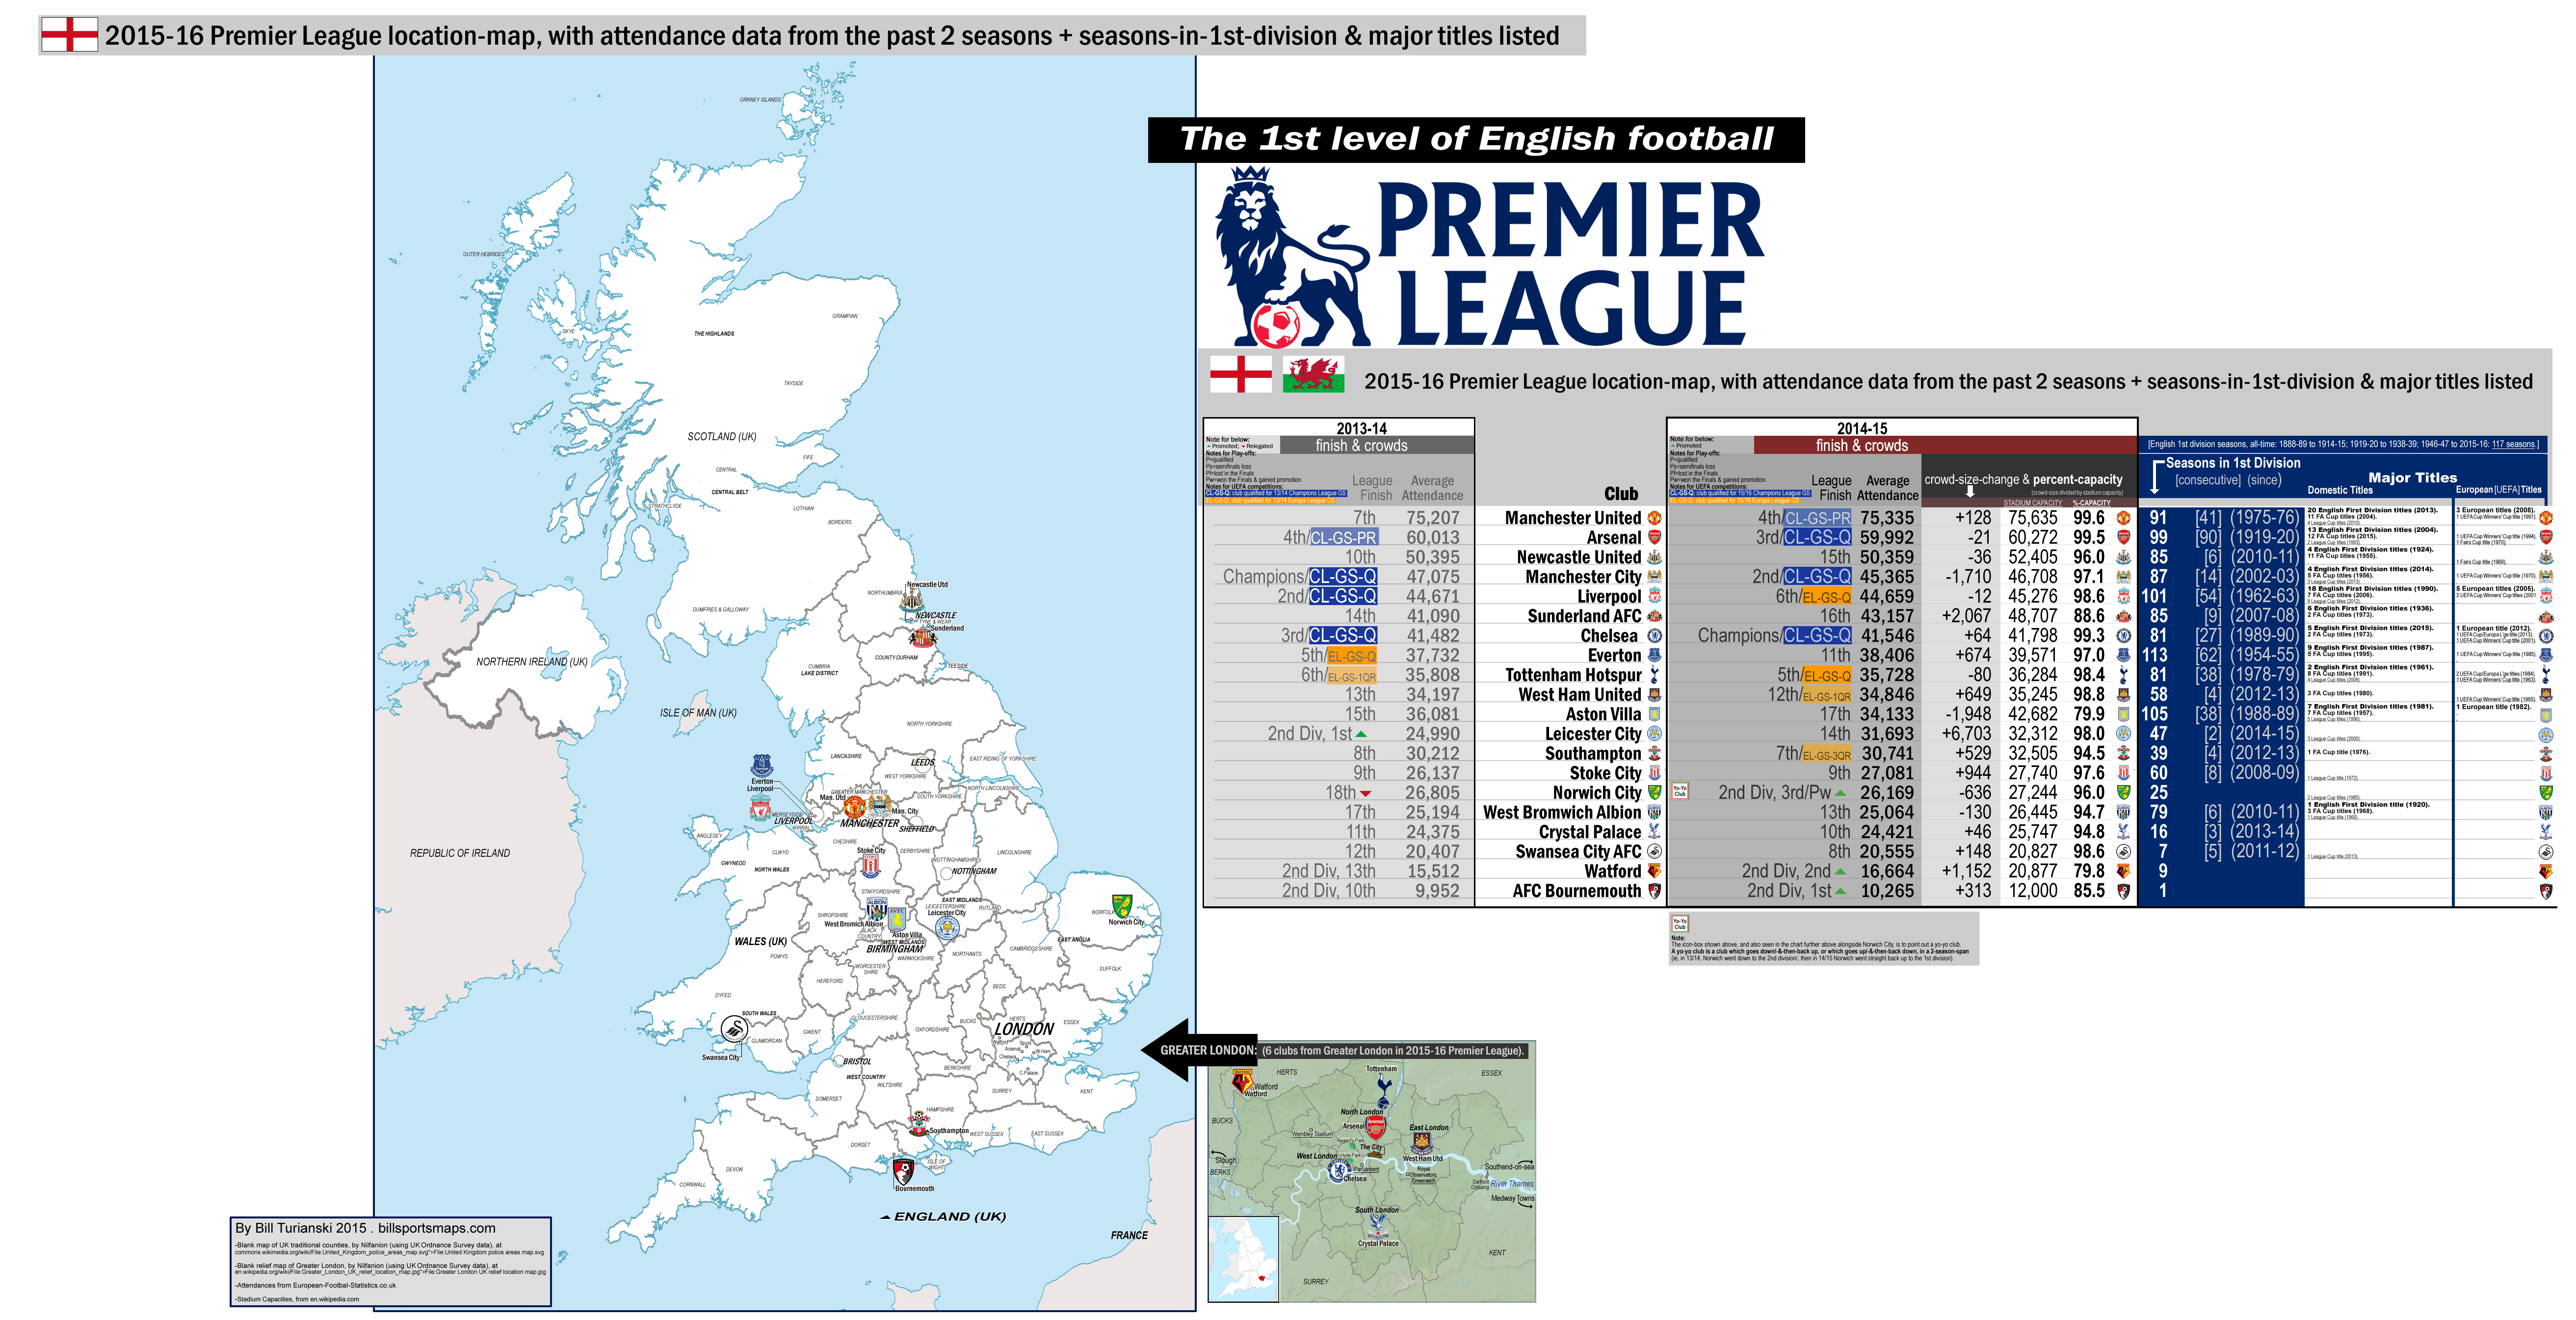 England: Premier League [1st division], 2015-16 location-map with: 14/15 attendances ...5250 x 2690